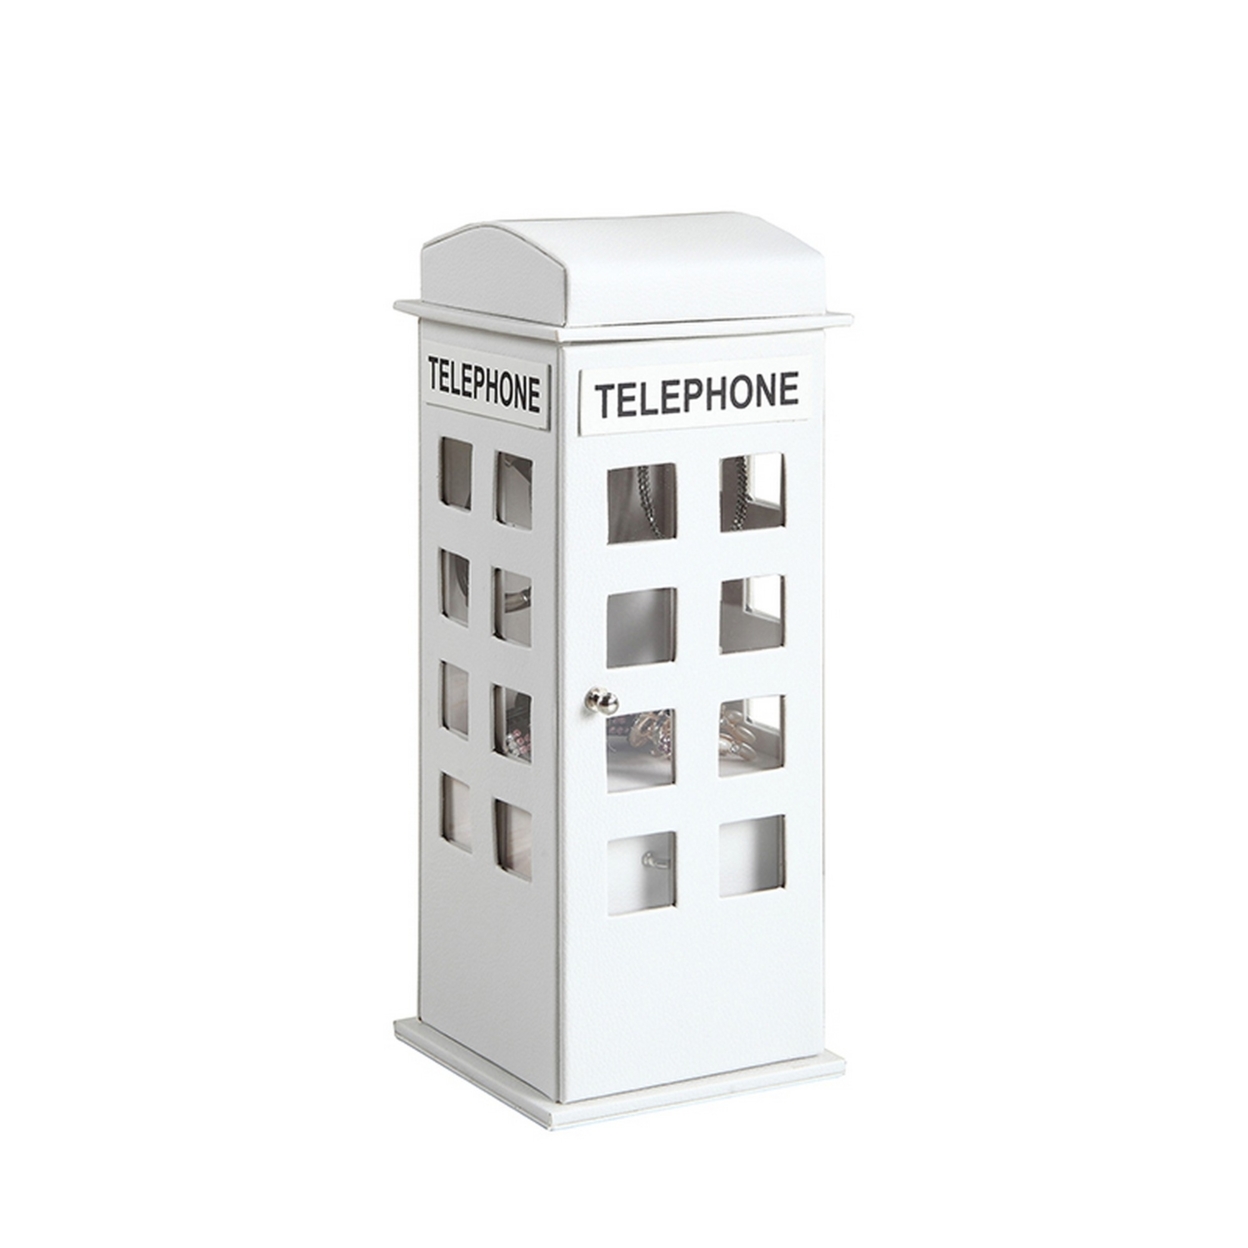 Telephone Booth Jewelry Box With 2 Drawers, White- Saltoro Sherpi